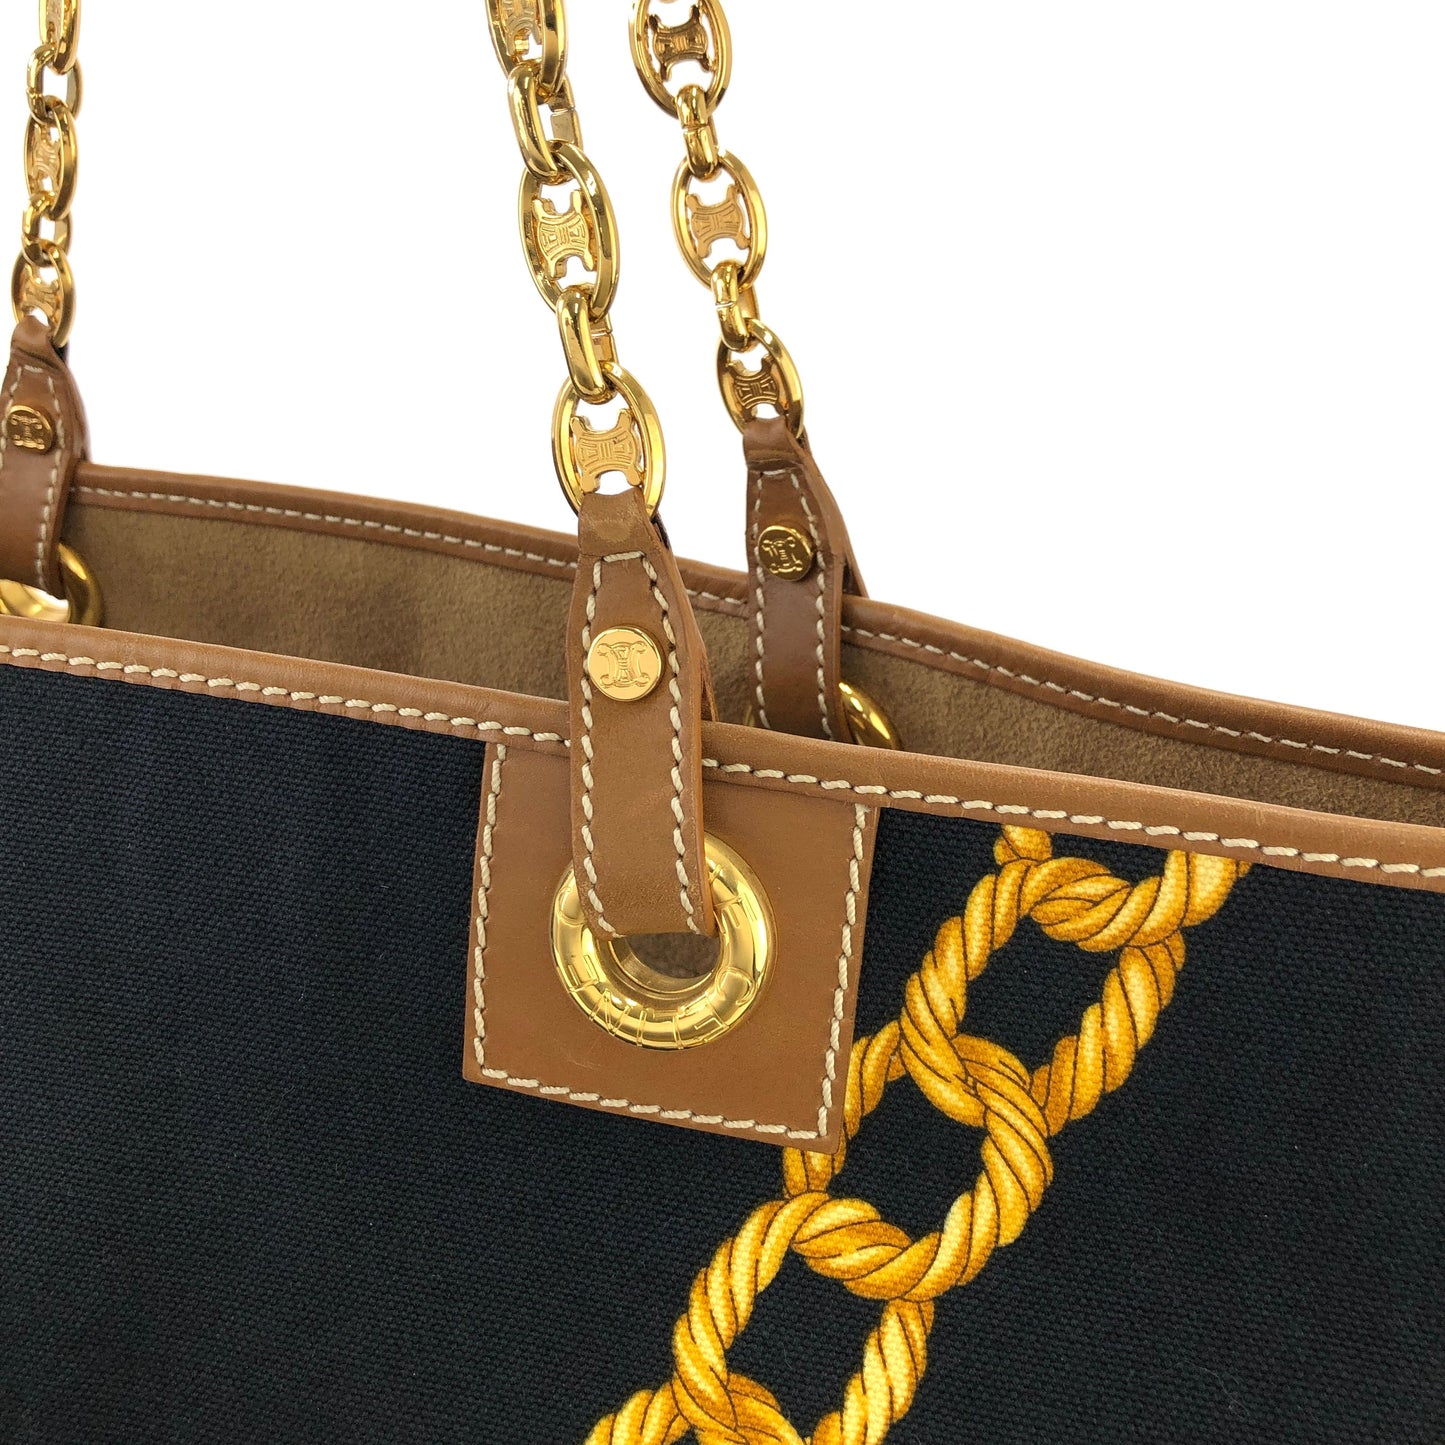 CELINE Logo pattern Fabric Chain Tote bag Shoulder bag Brown